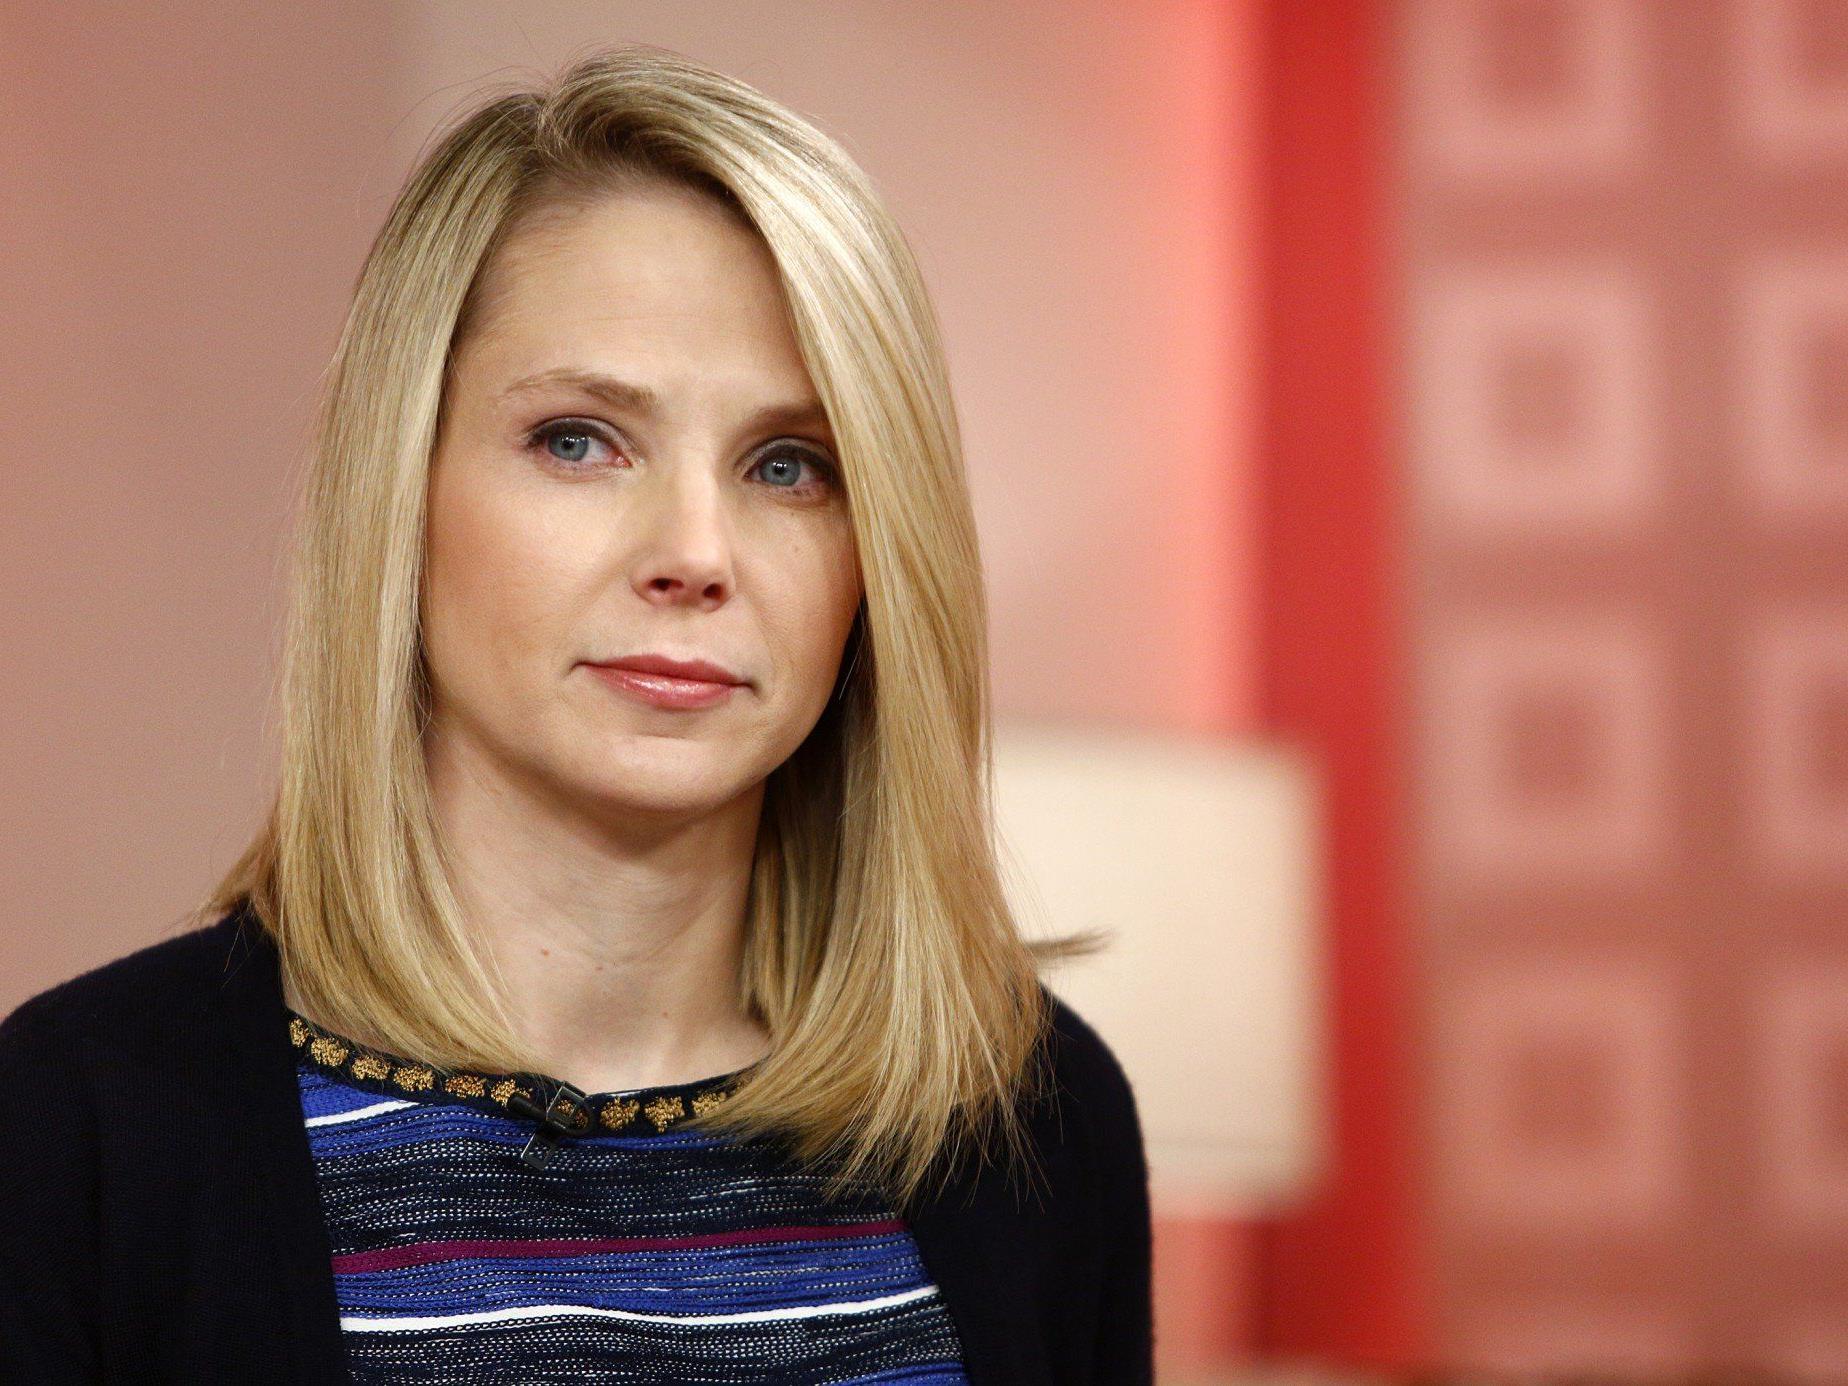 Die Yahoo-Chefin Marissa Mayer hat Angst vor dem Gefängnis, das ihr droht, falls sie nicht mit dem Geheimdienst kooperiert.